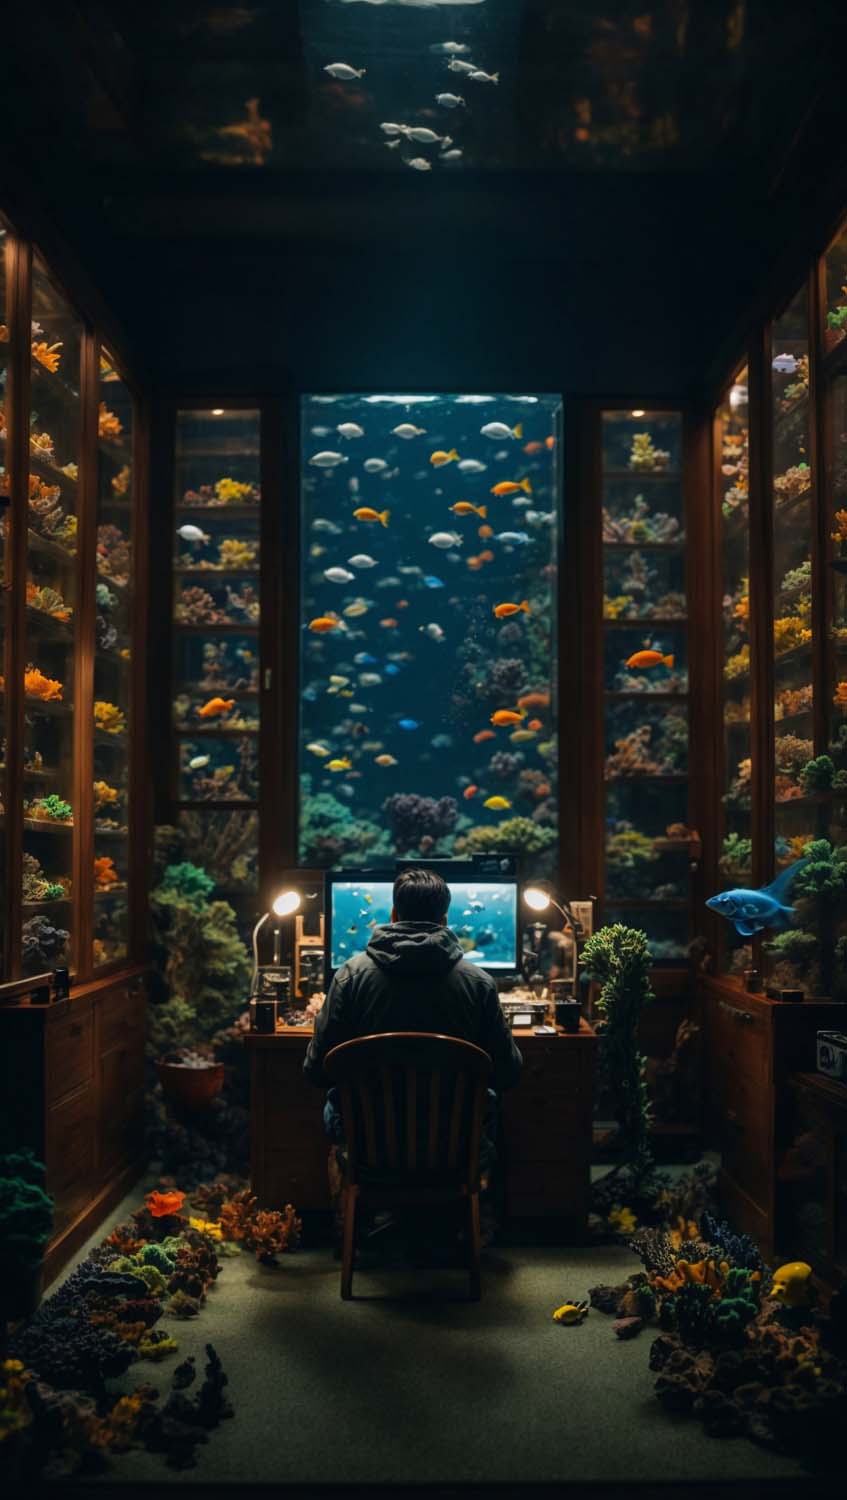 Office in Fish Aquarium